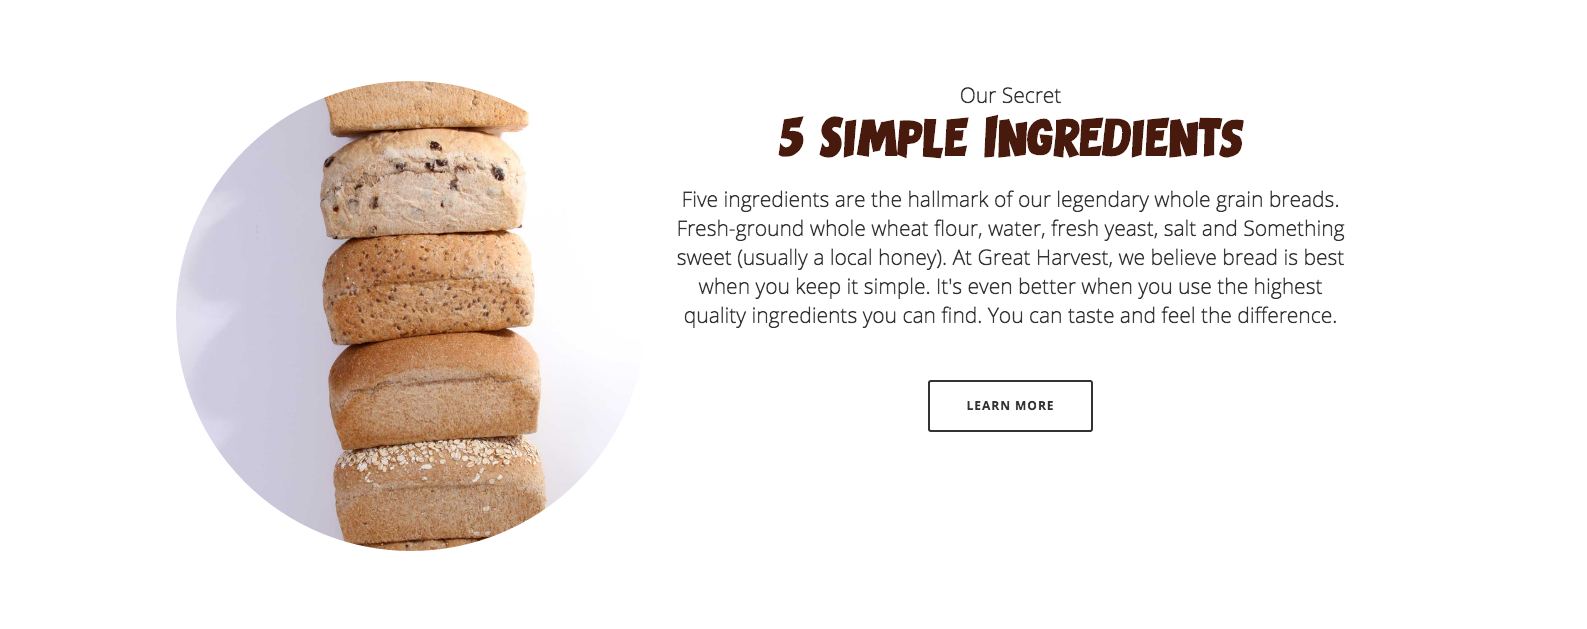 5 Simple Ingredients